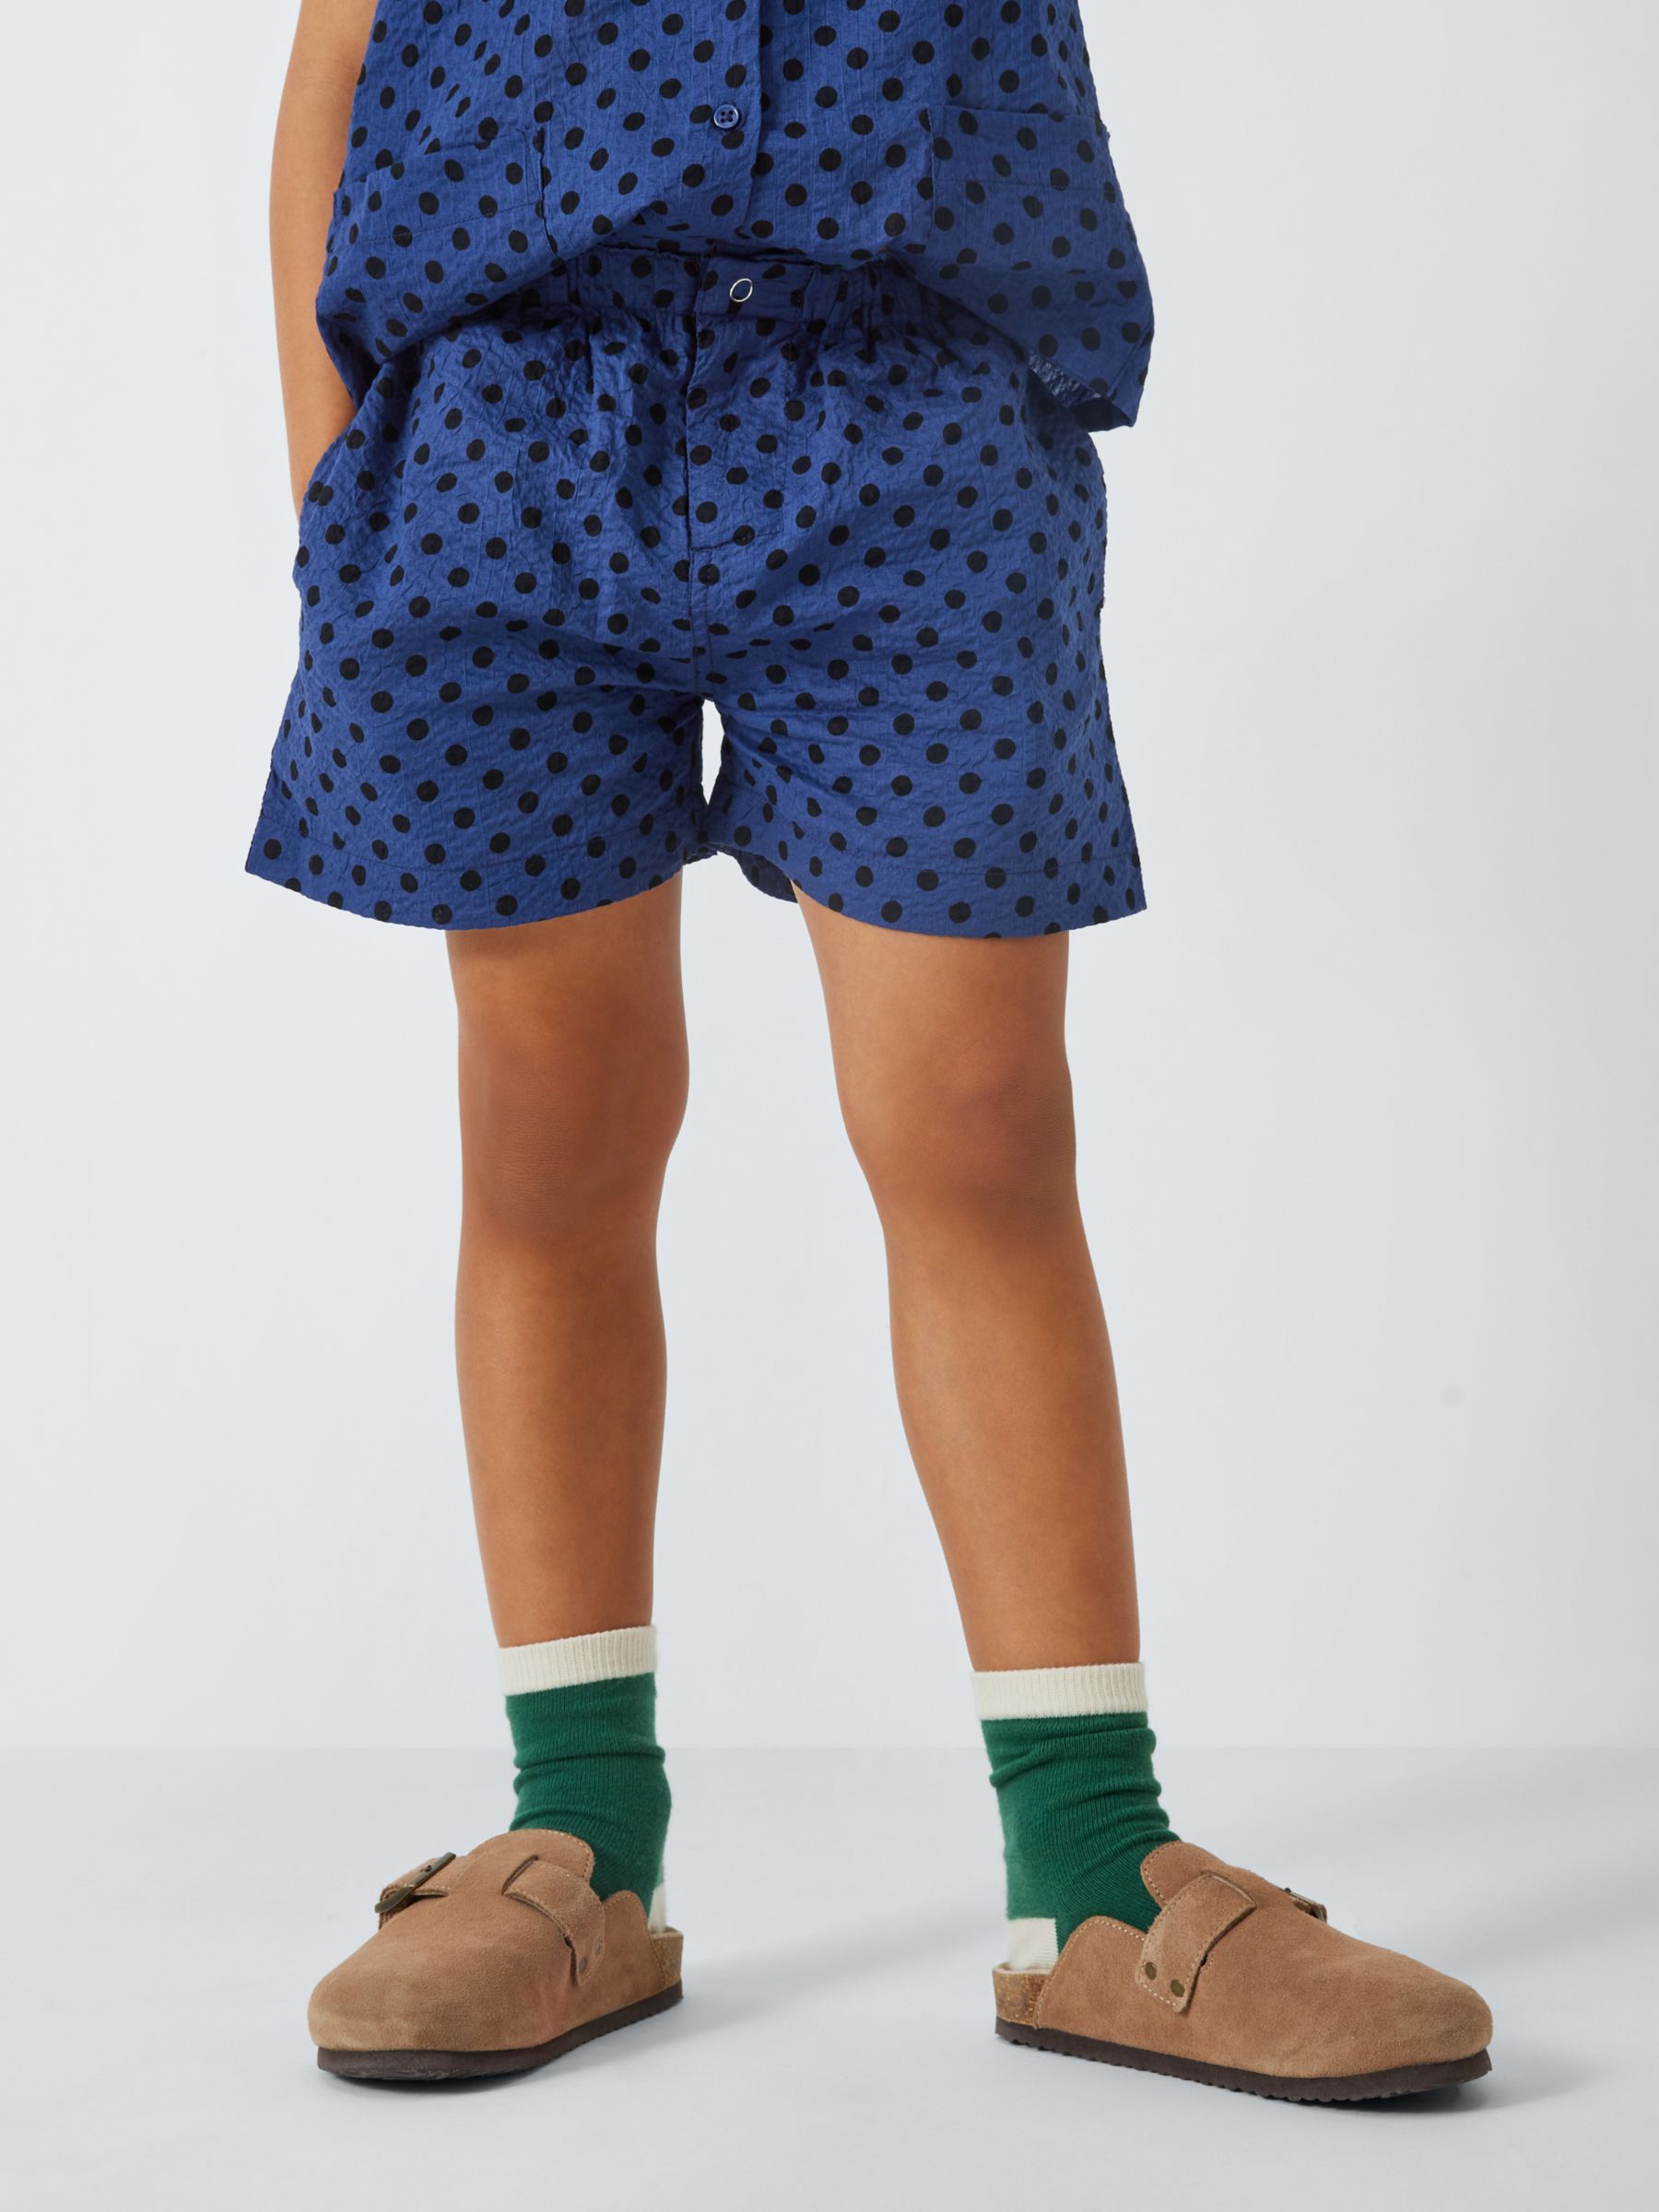 Caramel Kids' Apium Polka Dot Shorts, Navy, 3 years